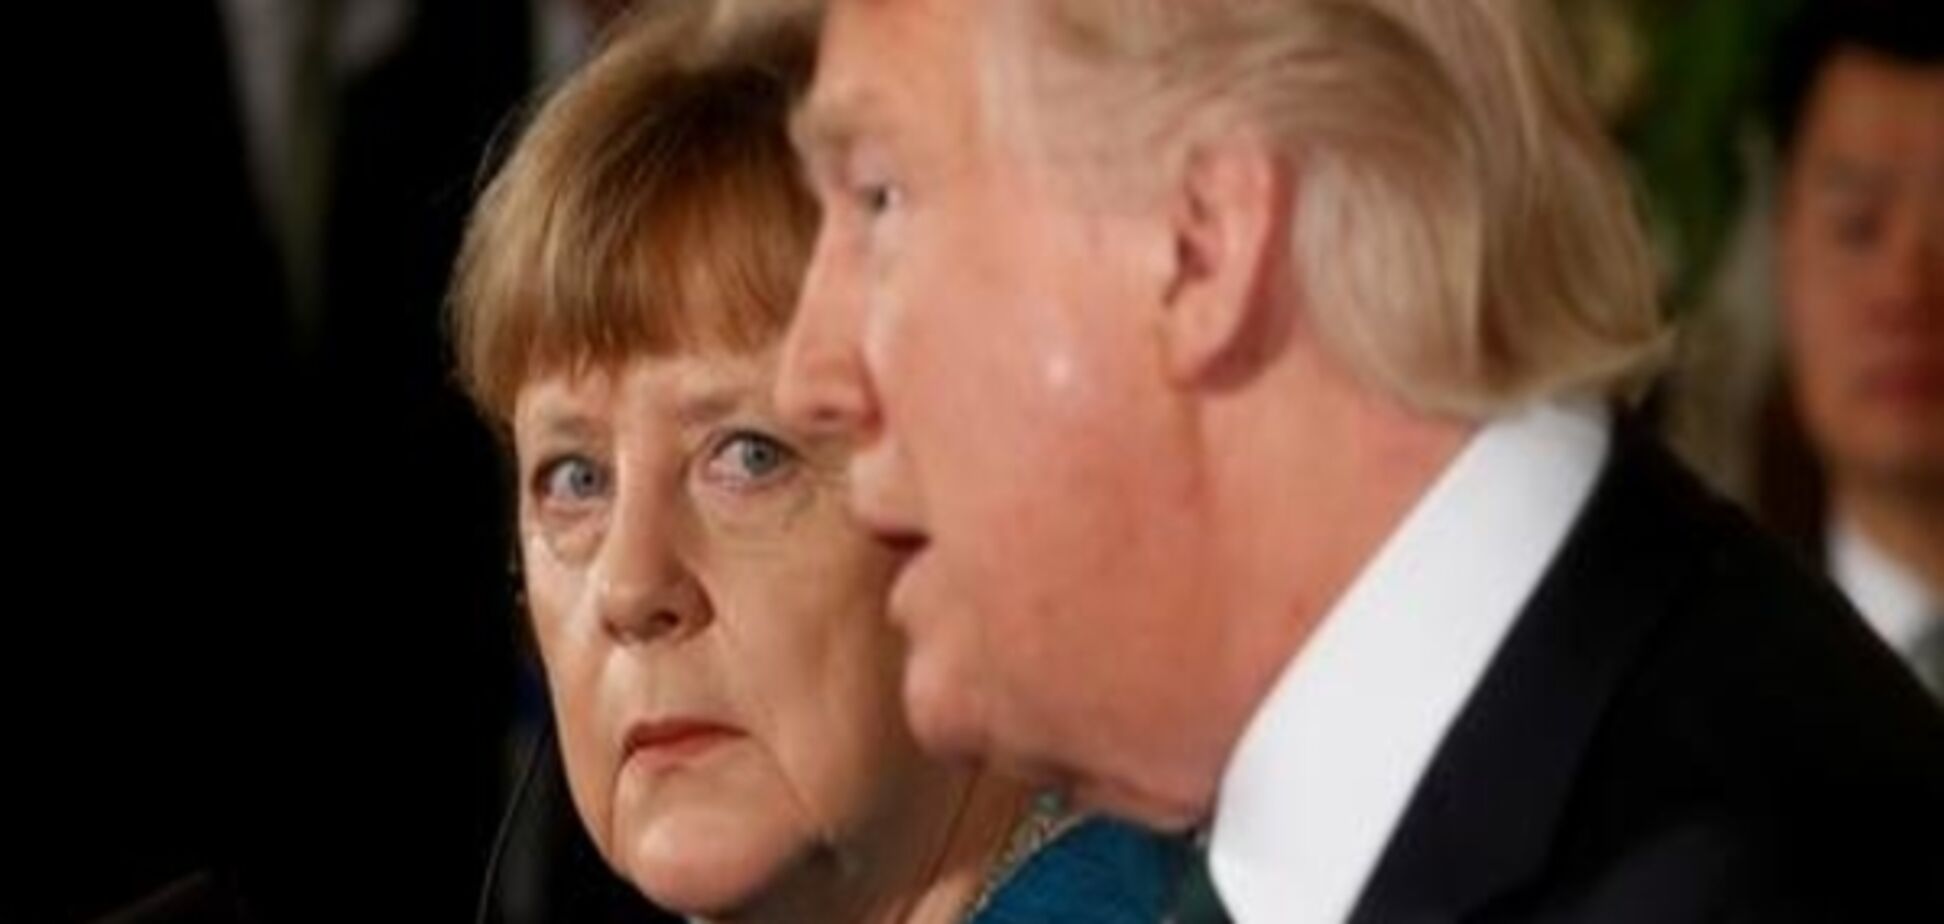 Меркель хоче продовження переговорів зі США щодо TTIP